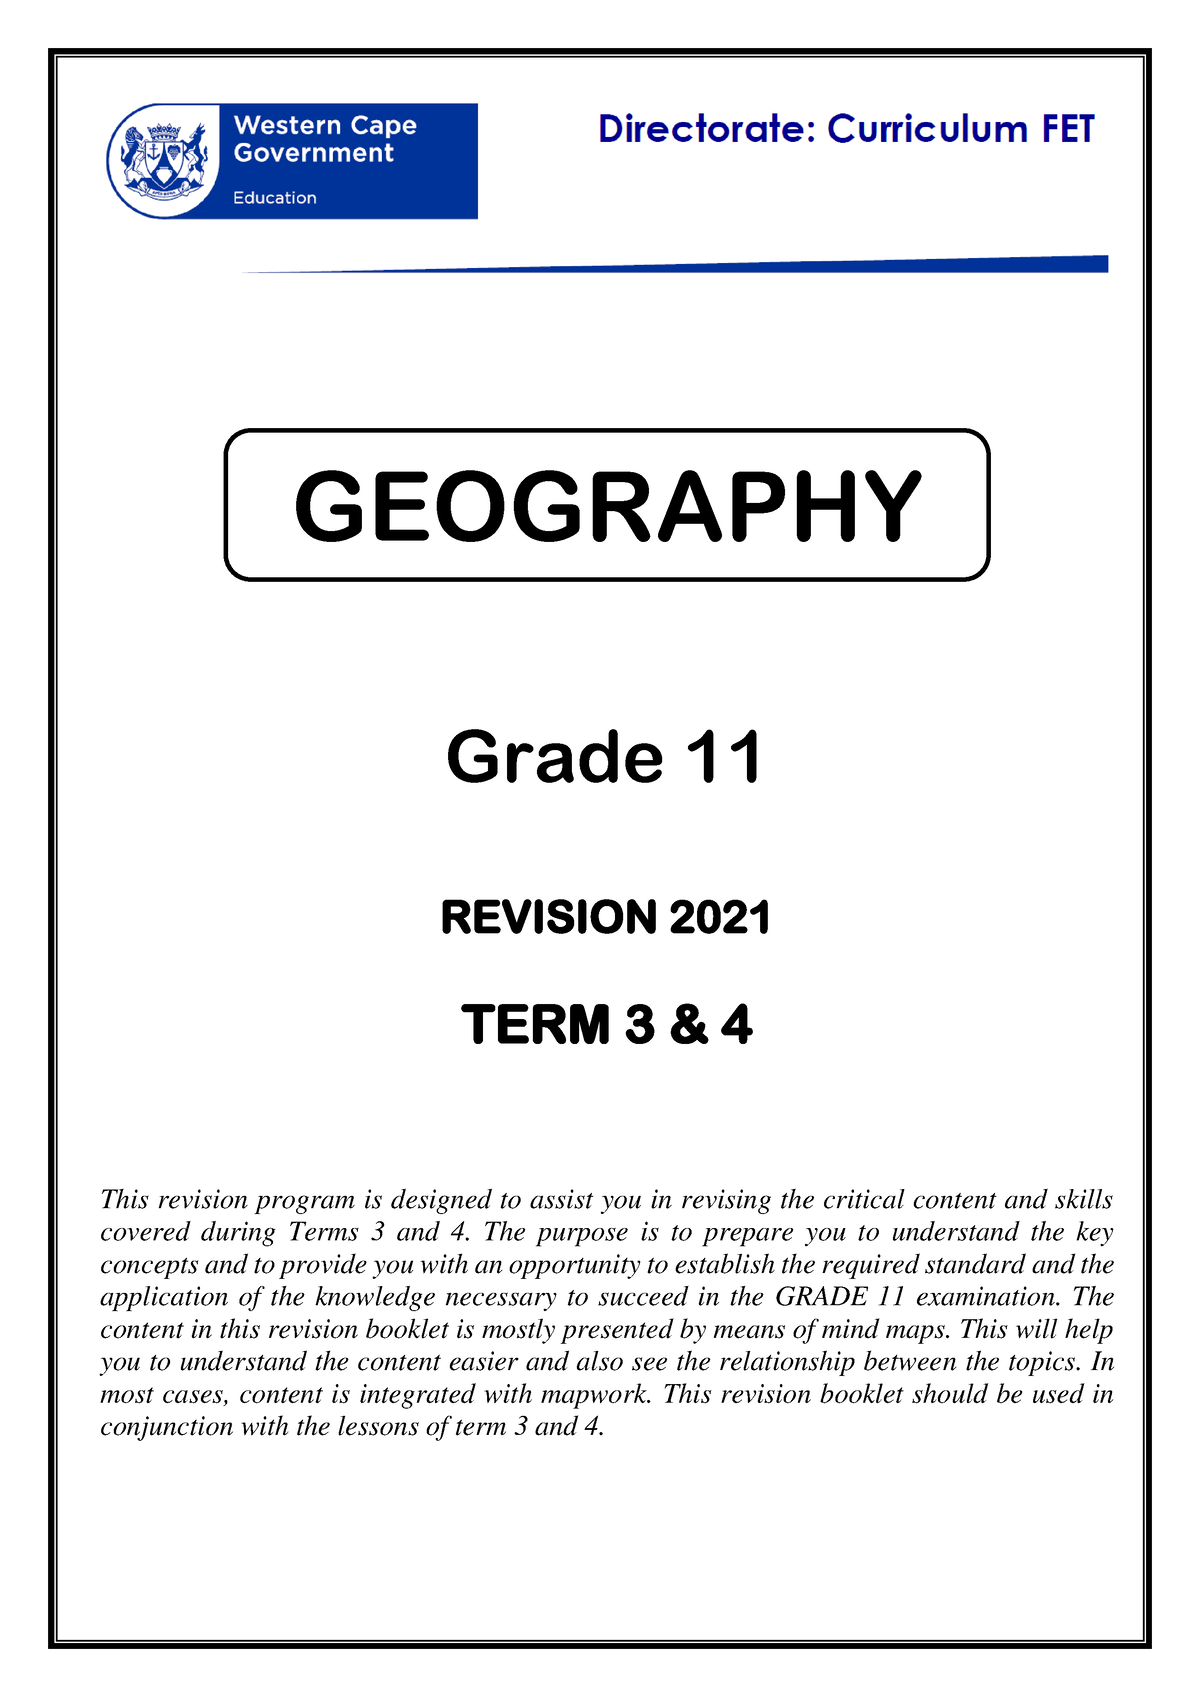 lo assignment grade 11 term 3